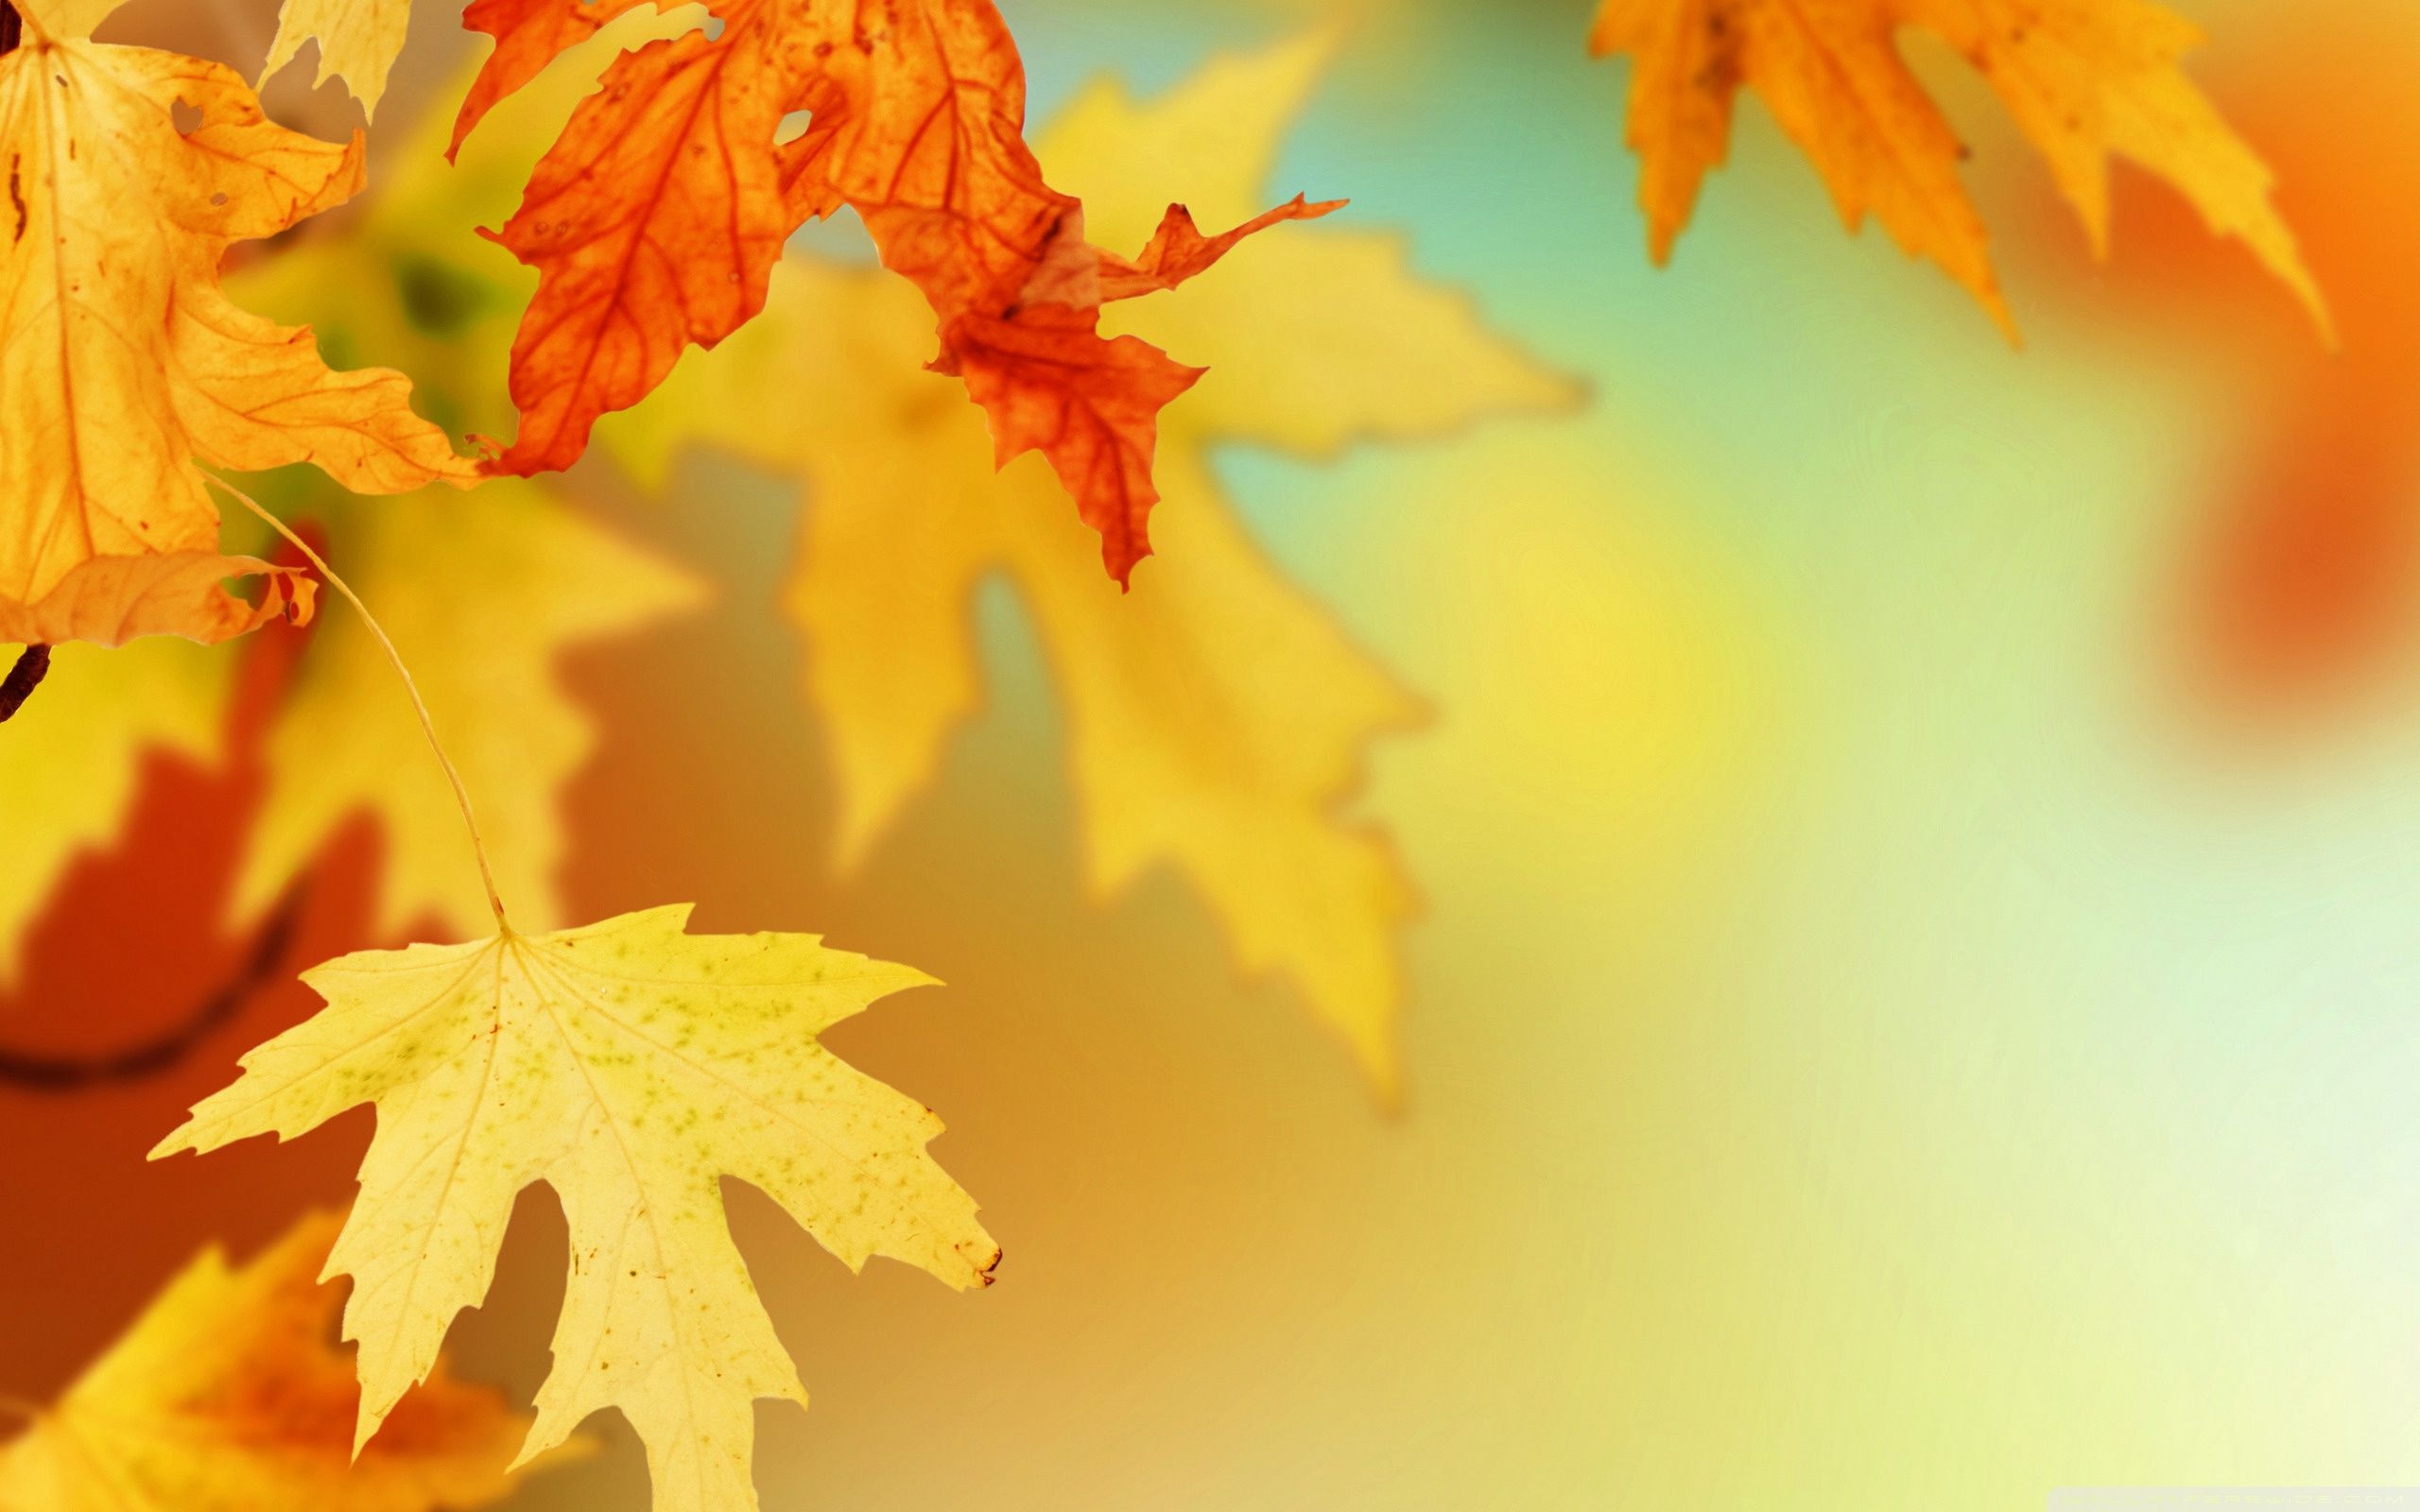 Fondos de la hoja de otoño - Los mejores fondos de la hoja de otoño gratis - WallpaperAccess